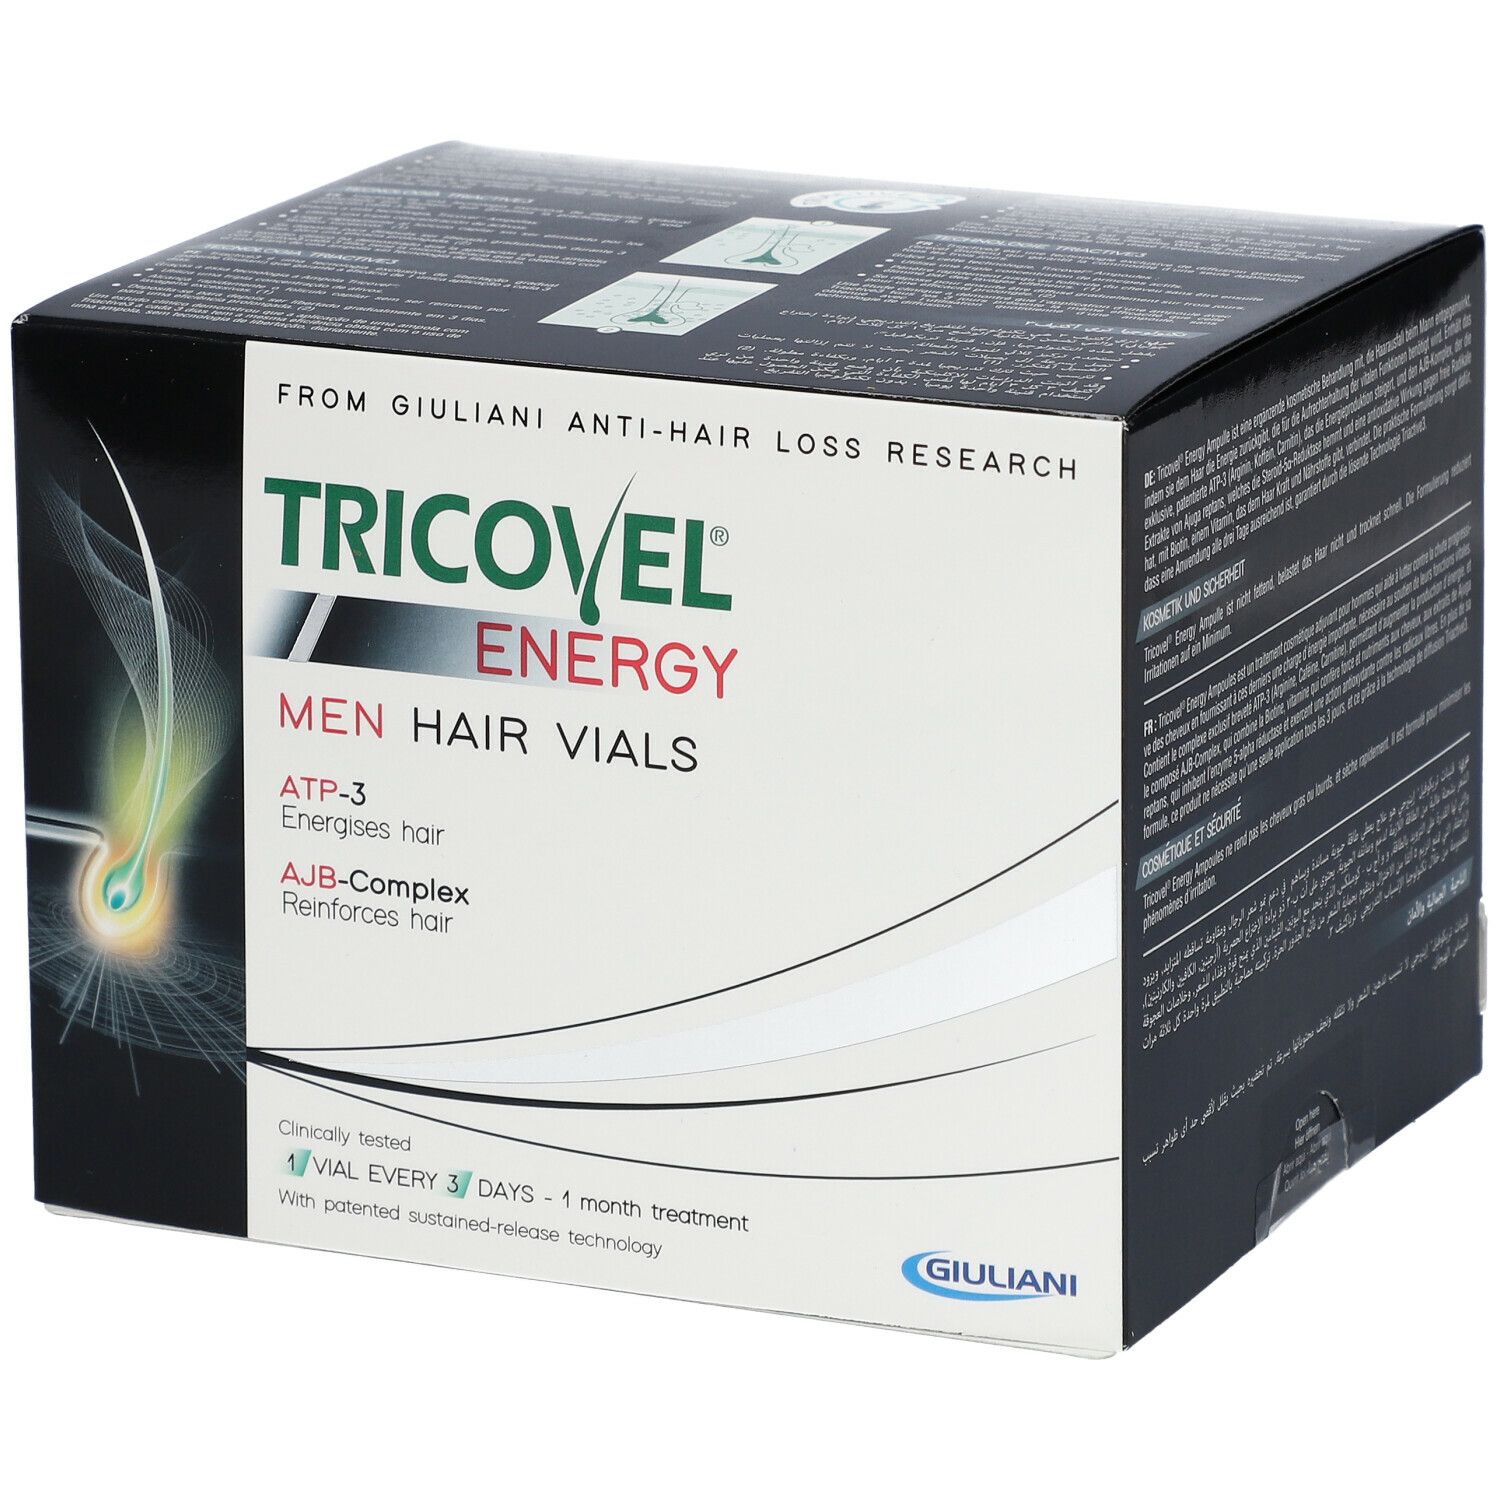 Tricovel® ENERGY MEN